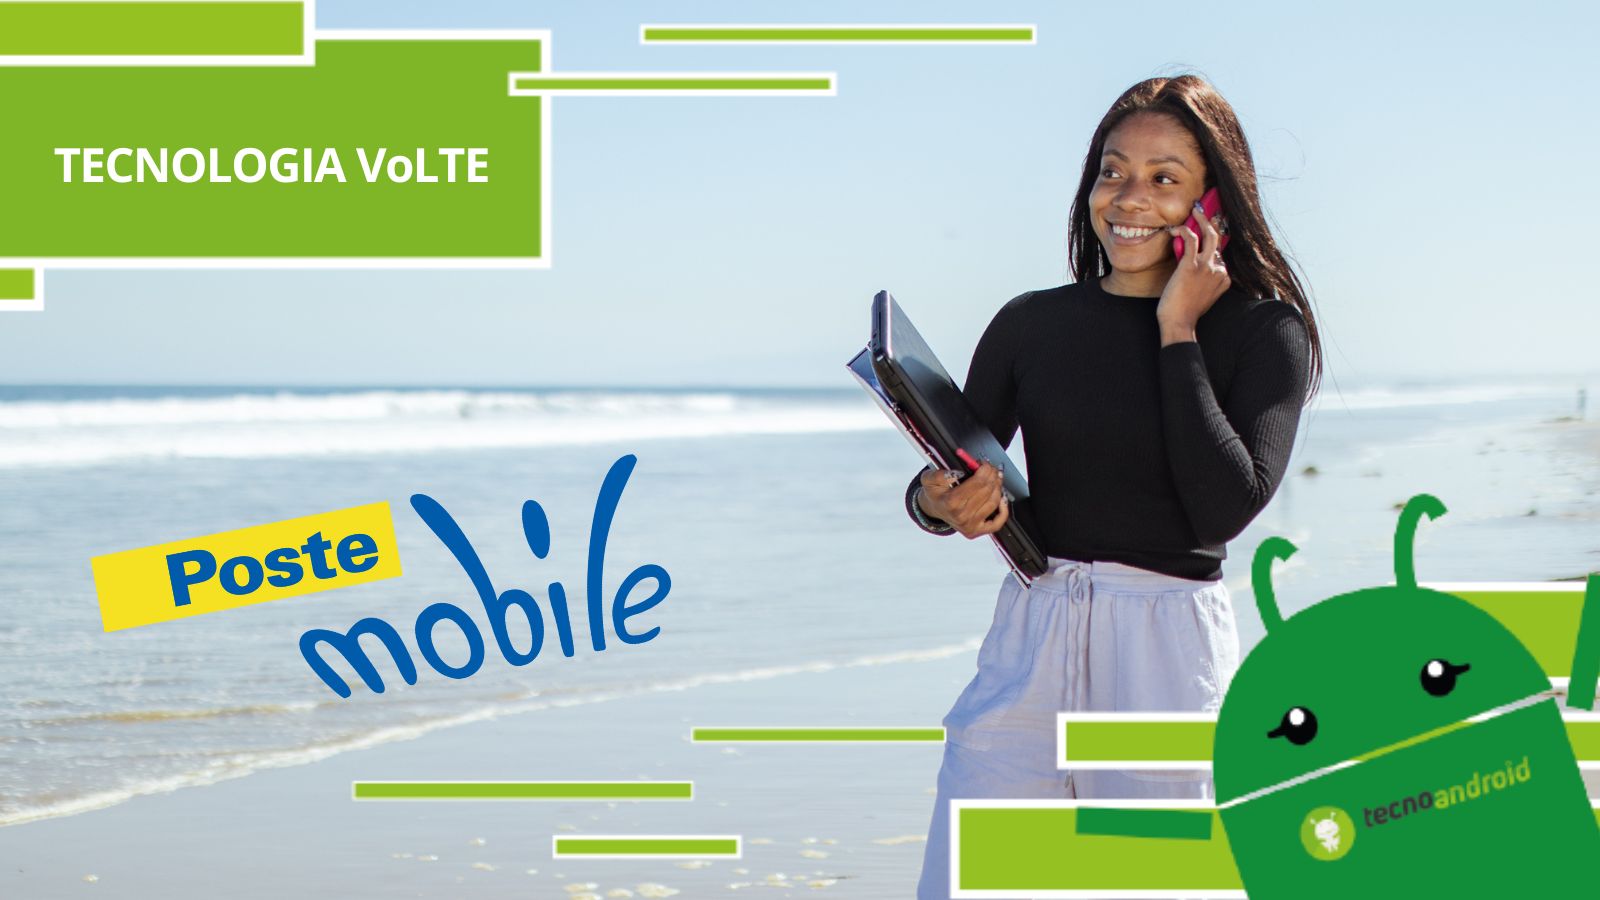 Postemobile, la nuova tecnologia VoLTE segnerà la svolta della telefonia